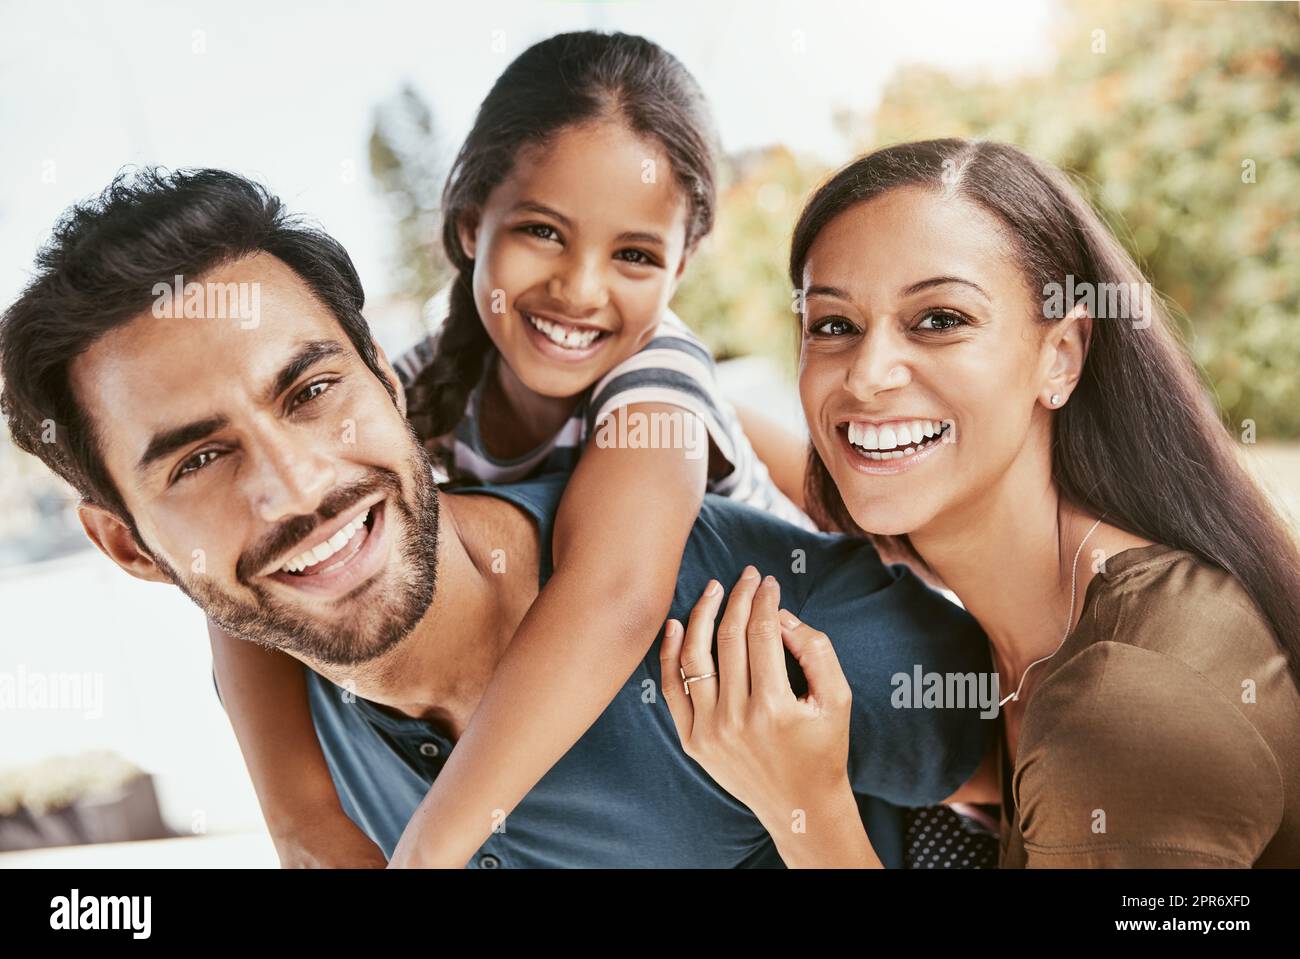 Keine Zeit ist etwas Besonderes als die Zeit mit der Familie. Aufnahme einer dreiköpfigen jungen Familie, die einige Zeit miteinander verbringt. Stockfoto